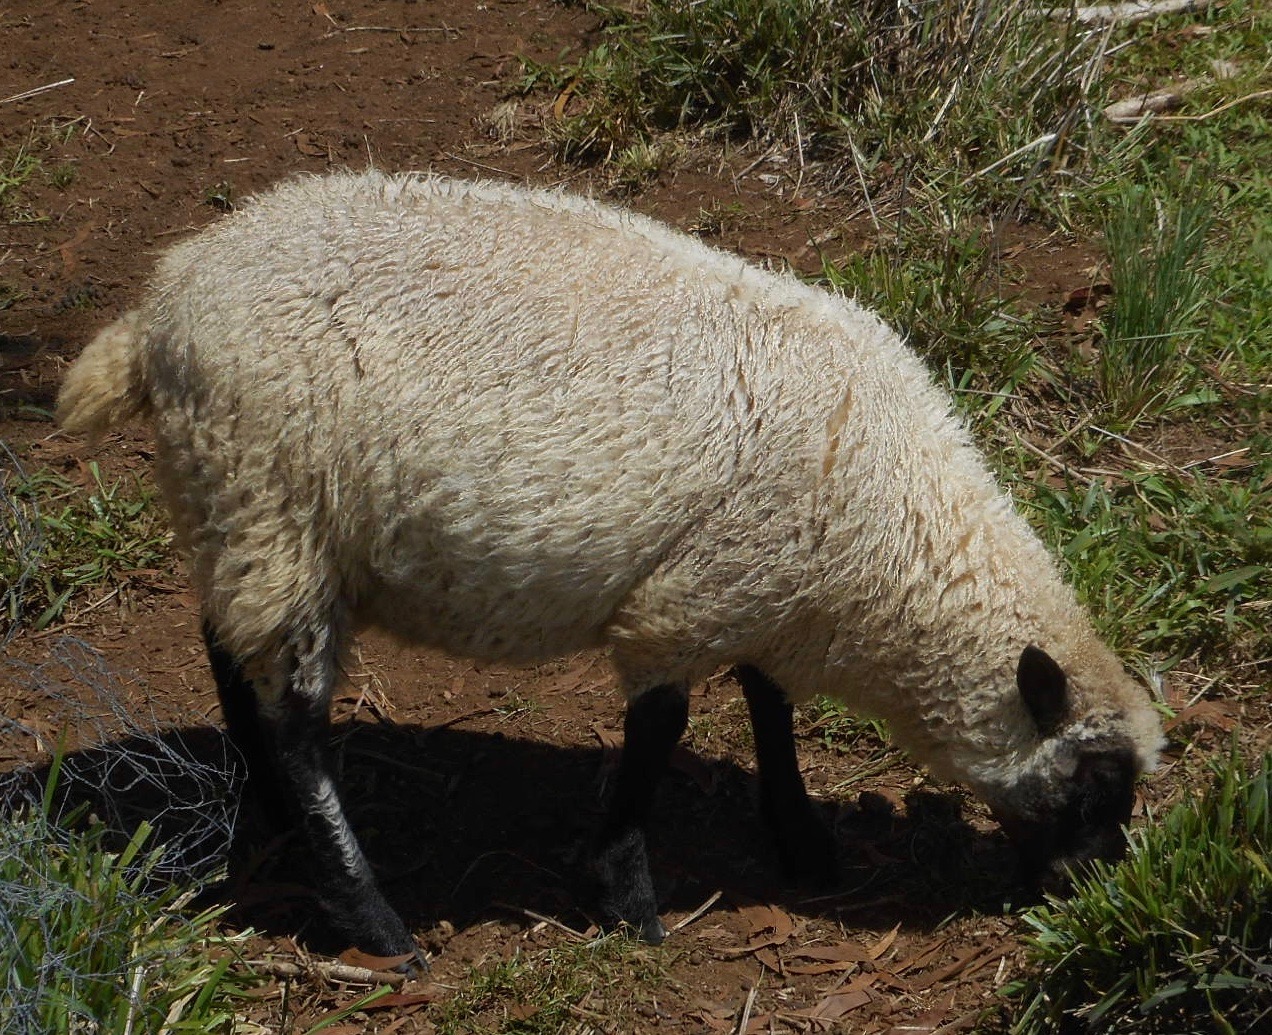 Cocoa's ewe lamb